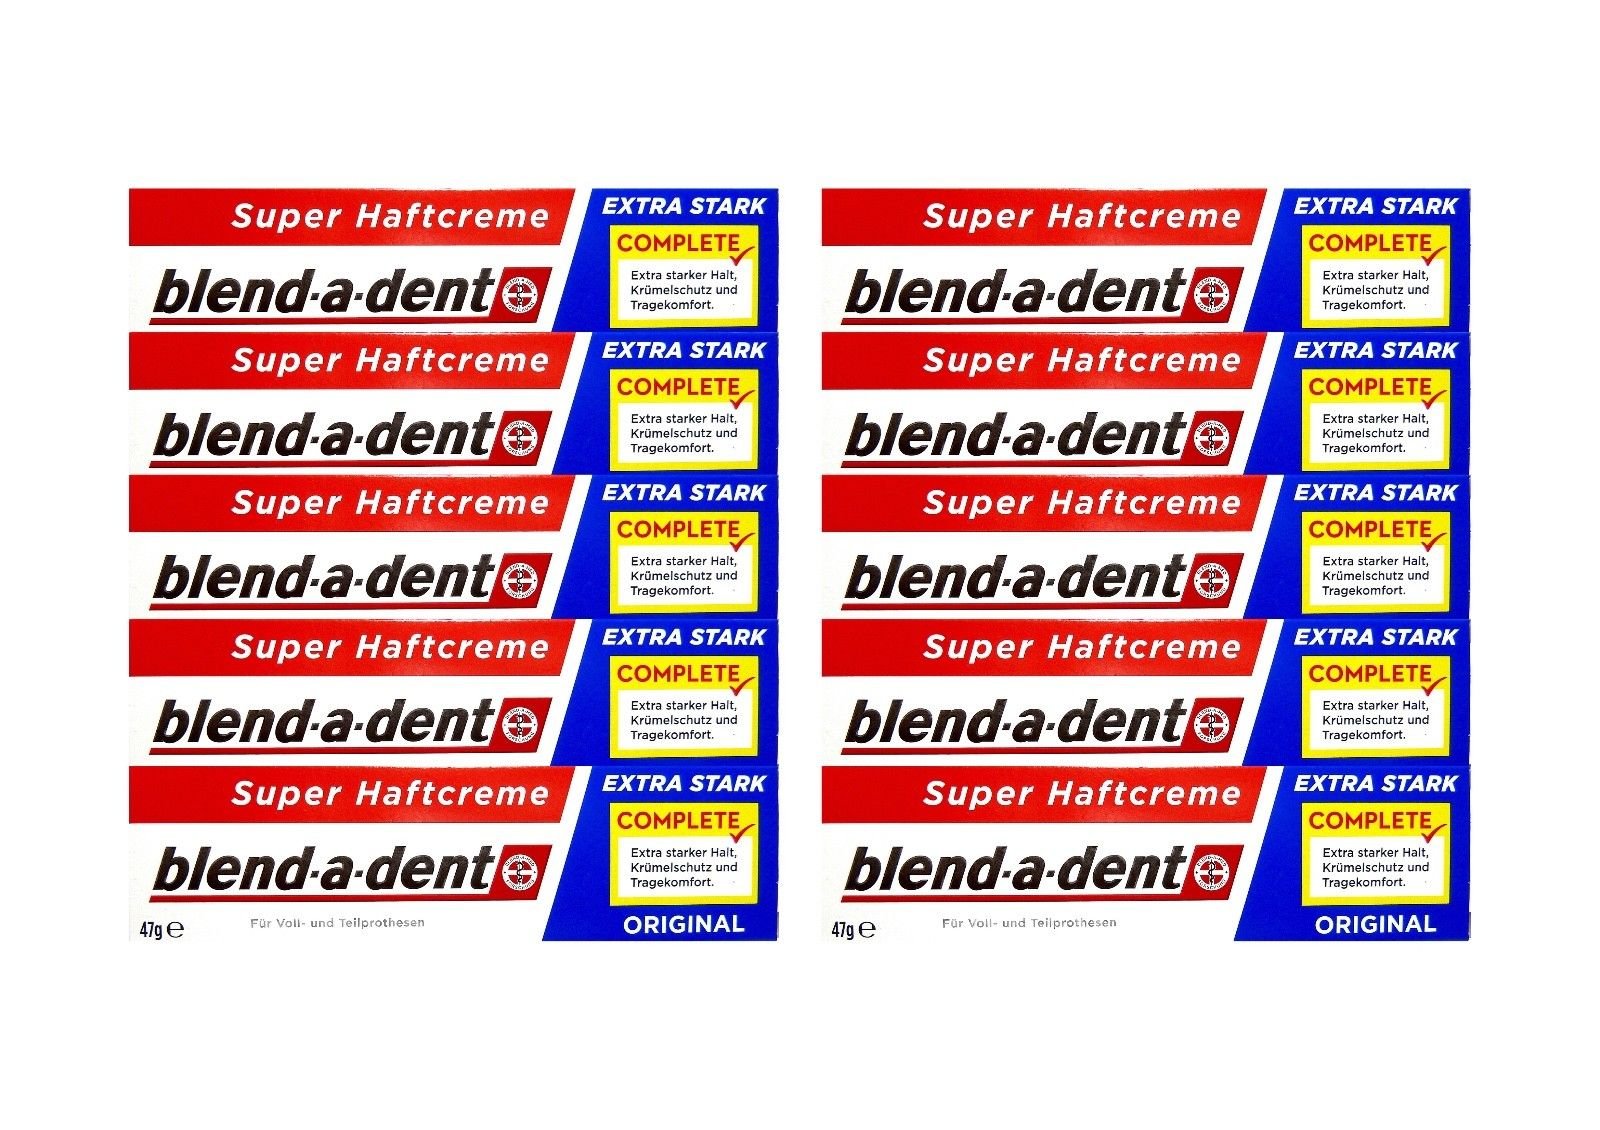 Blend-a-dent 10 x 47g blend-a-dent Original Super Haftcreme - Extra Stark - Complete